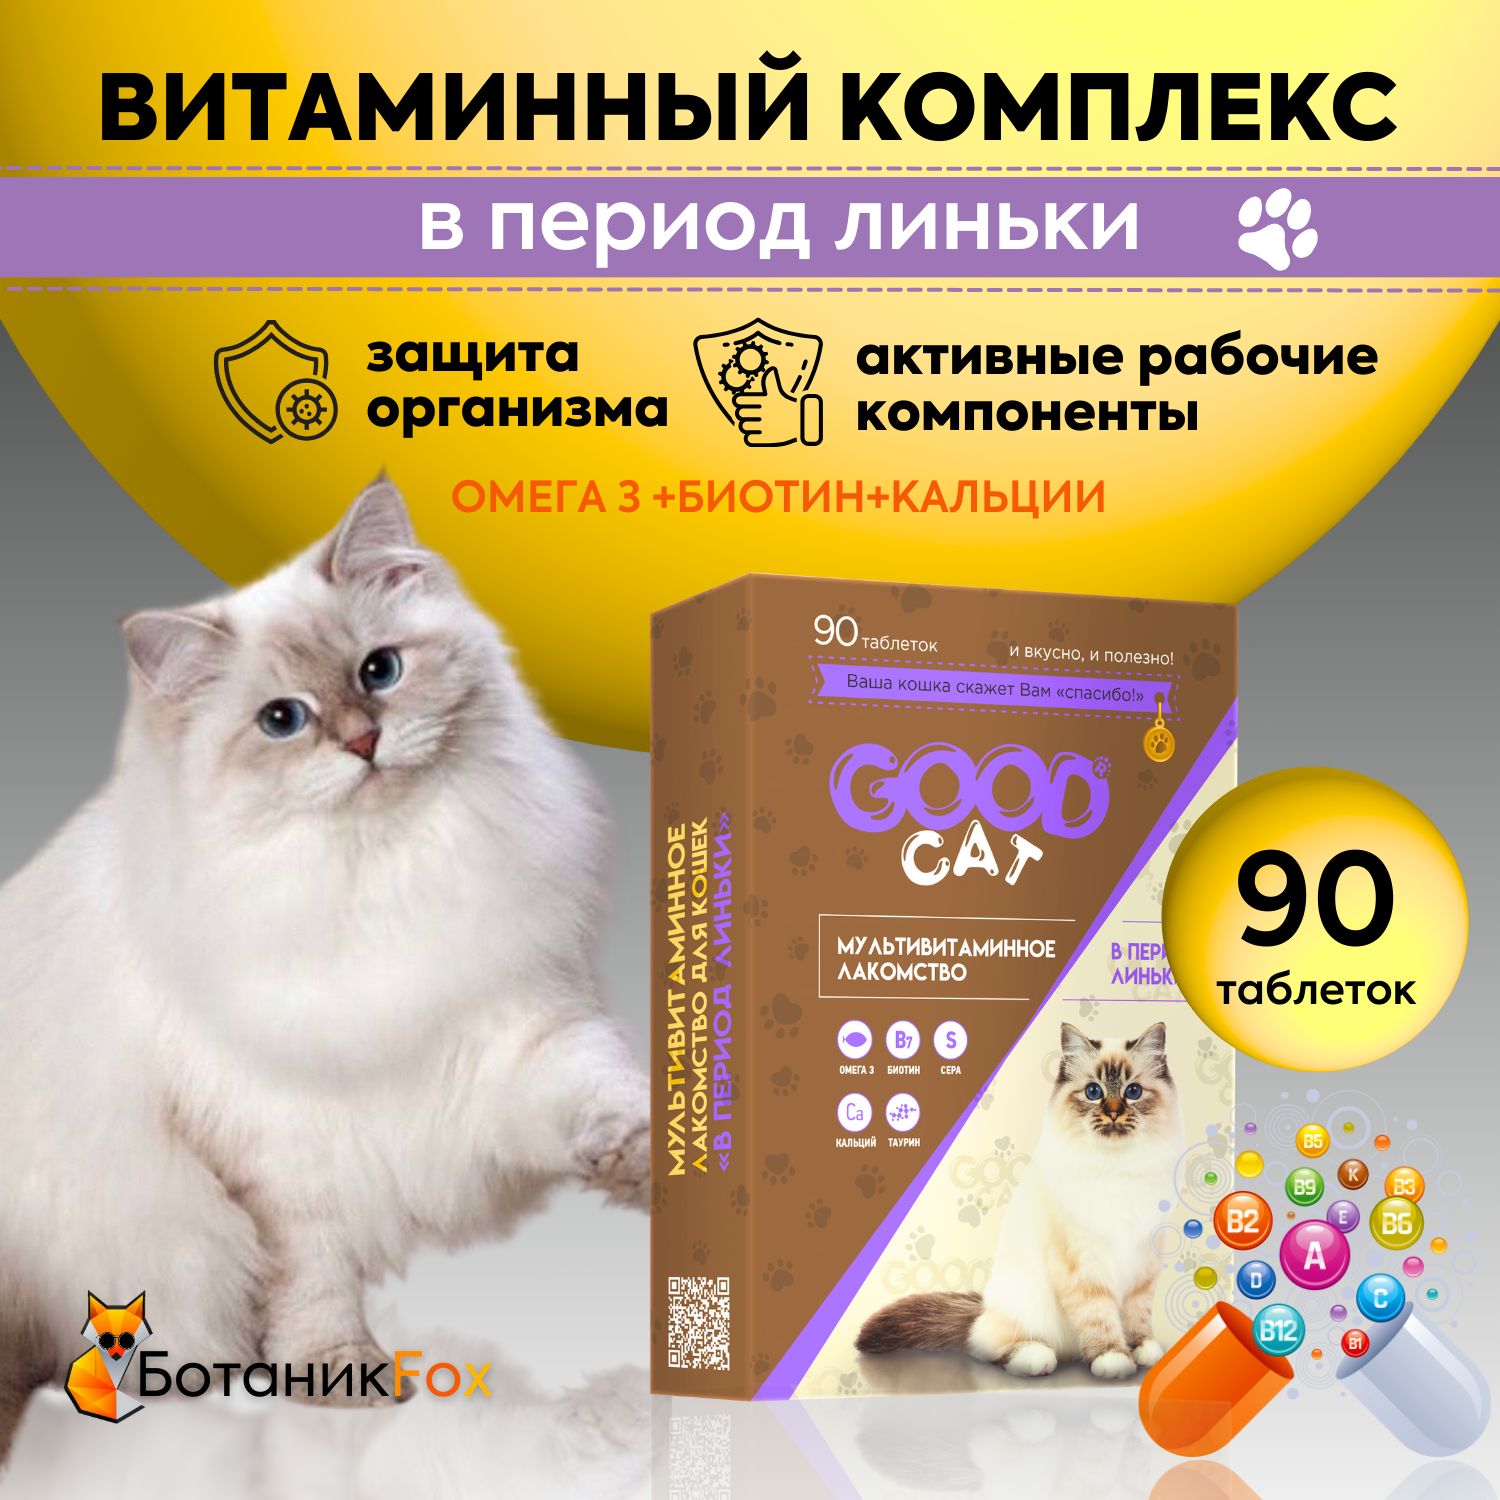 Правила ухода за кожей и шерстью домашней кошки - fitdiets.ru